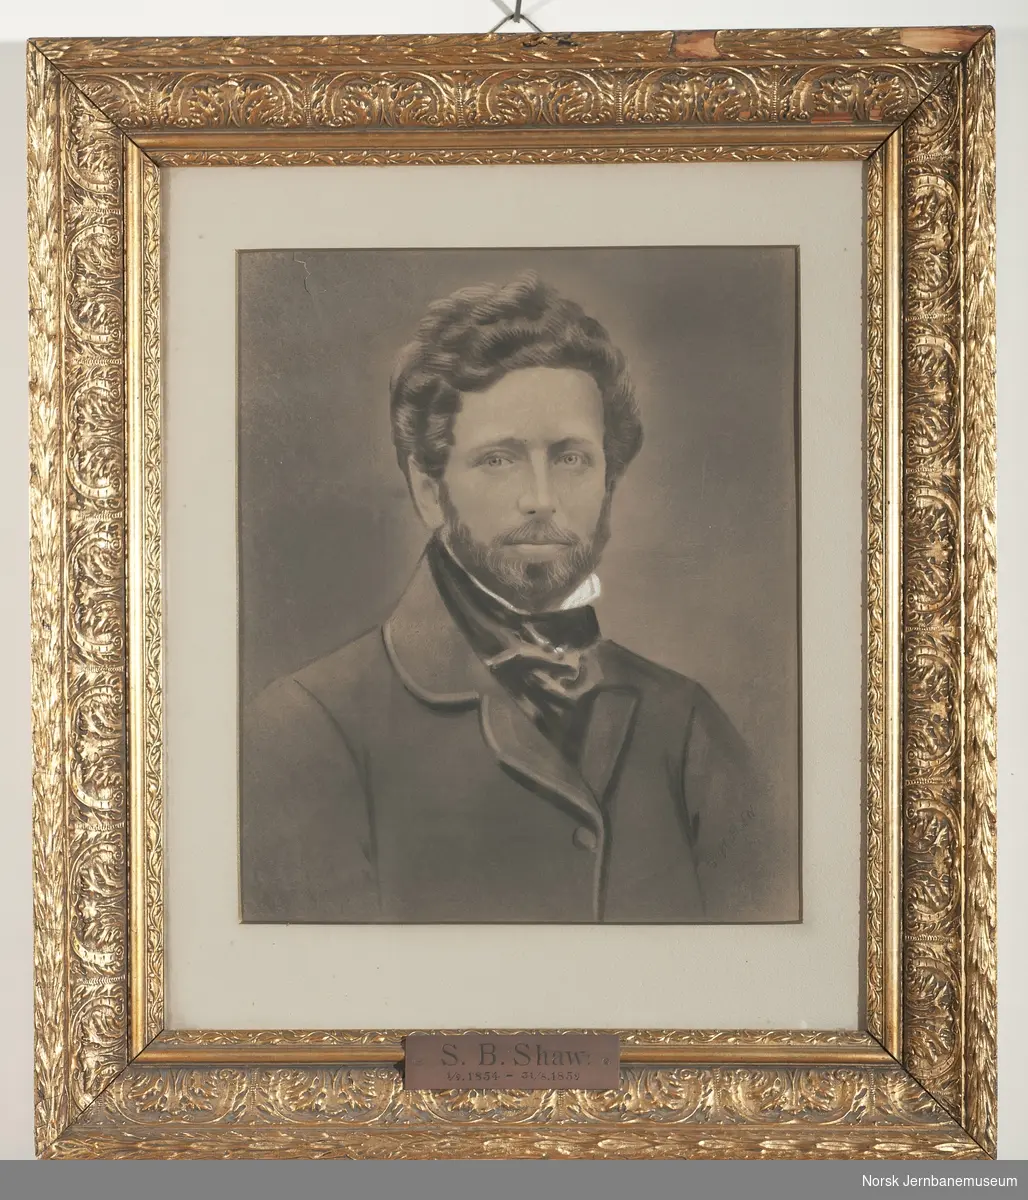 Foto i glass og ramme av driftsbestyrer S. B. Shaw ved Norsk Hovedjernbane 1854-1859